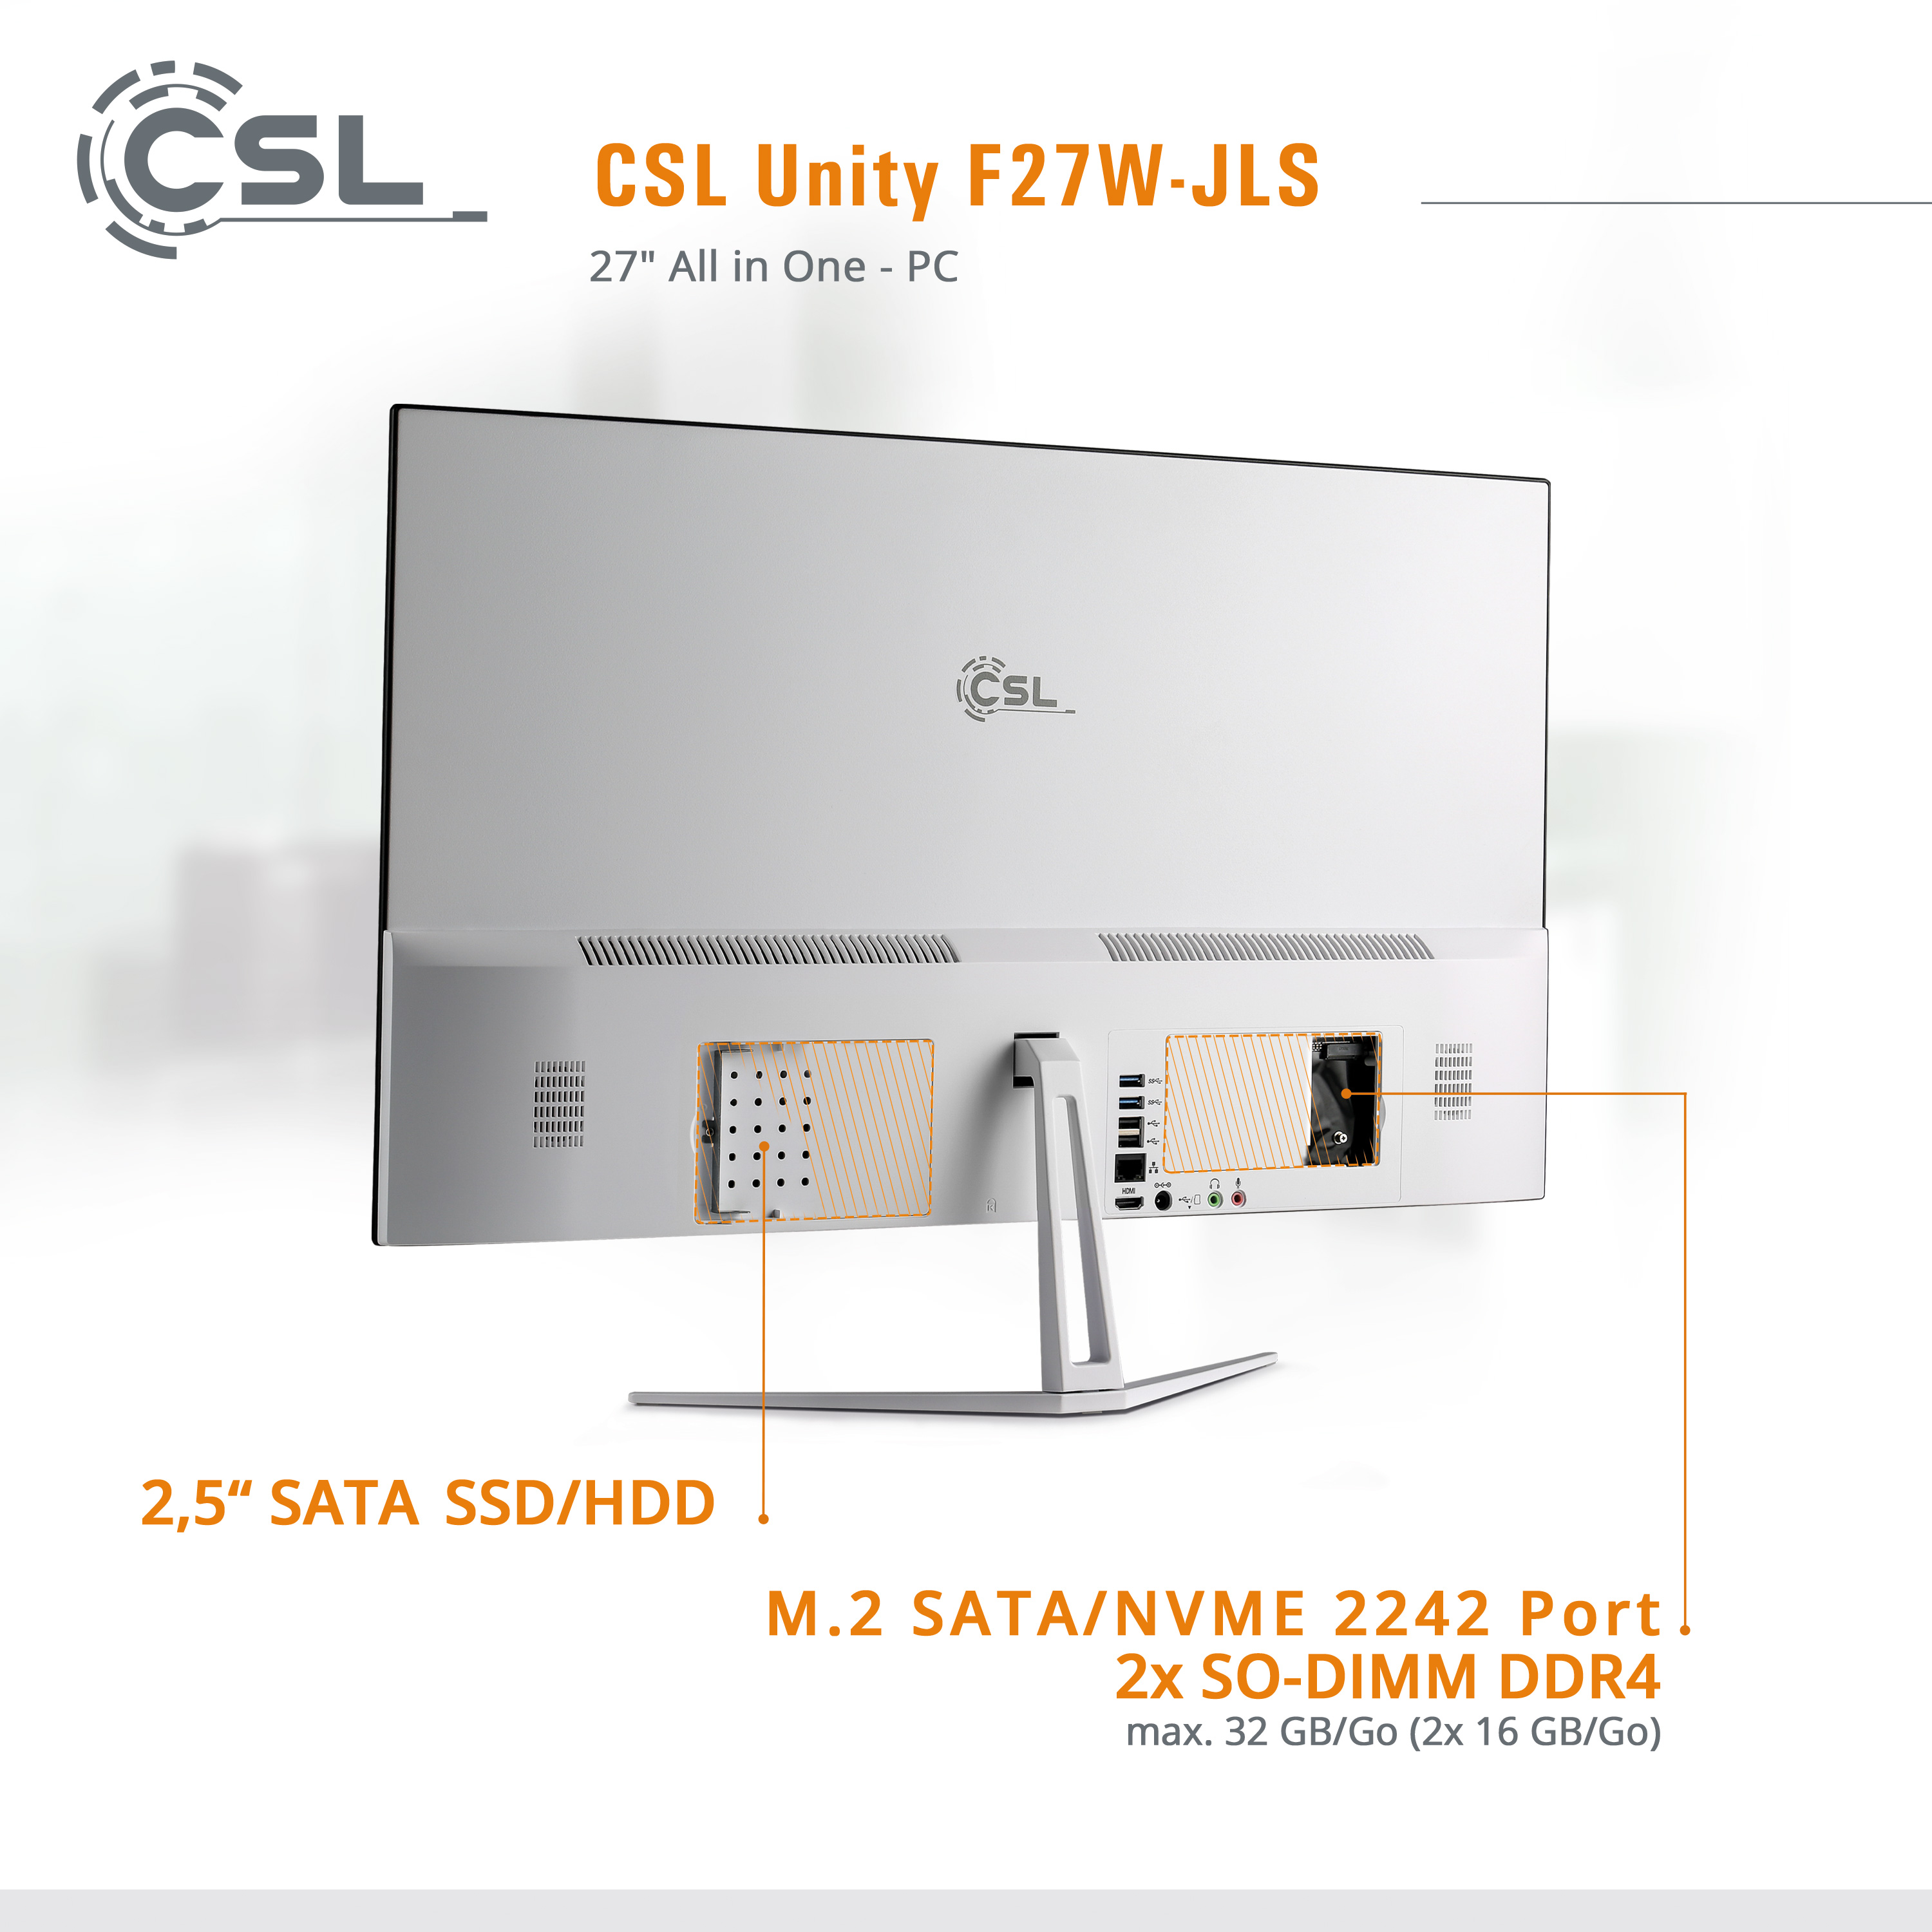 CSL Unity F27W-JLS GB Win 2000 / Pro, mit RAM GB 16 weiß 10 27 SSD, GB / RAM, UHD GB Display, Pentium / Graphics, All-in-One-PC 16 2000 Zoll Intel®